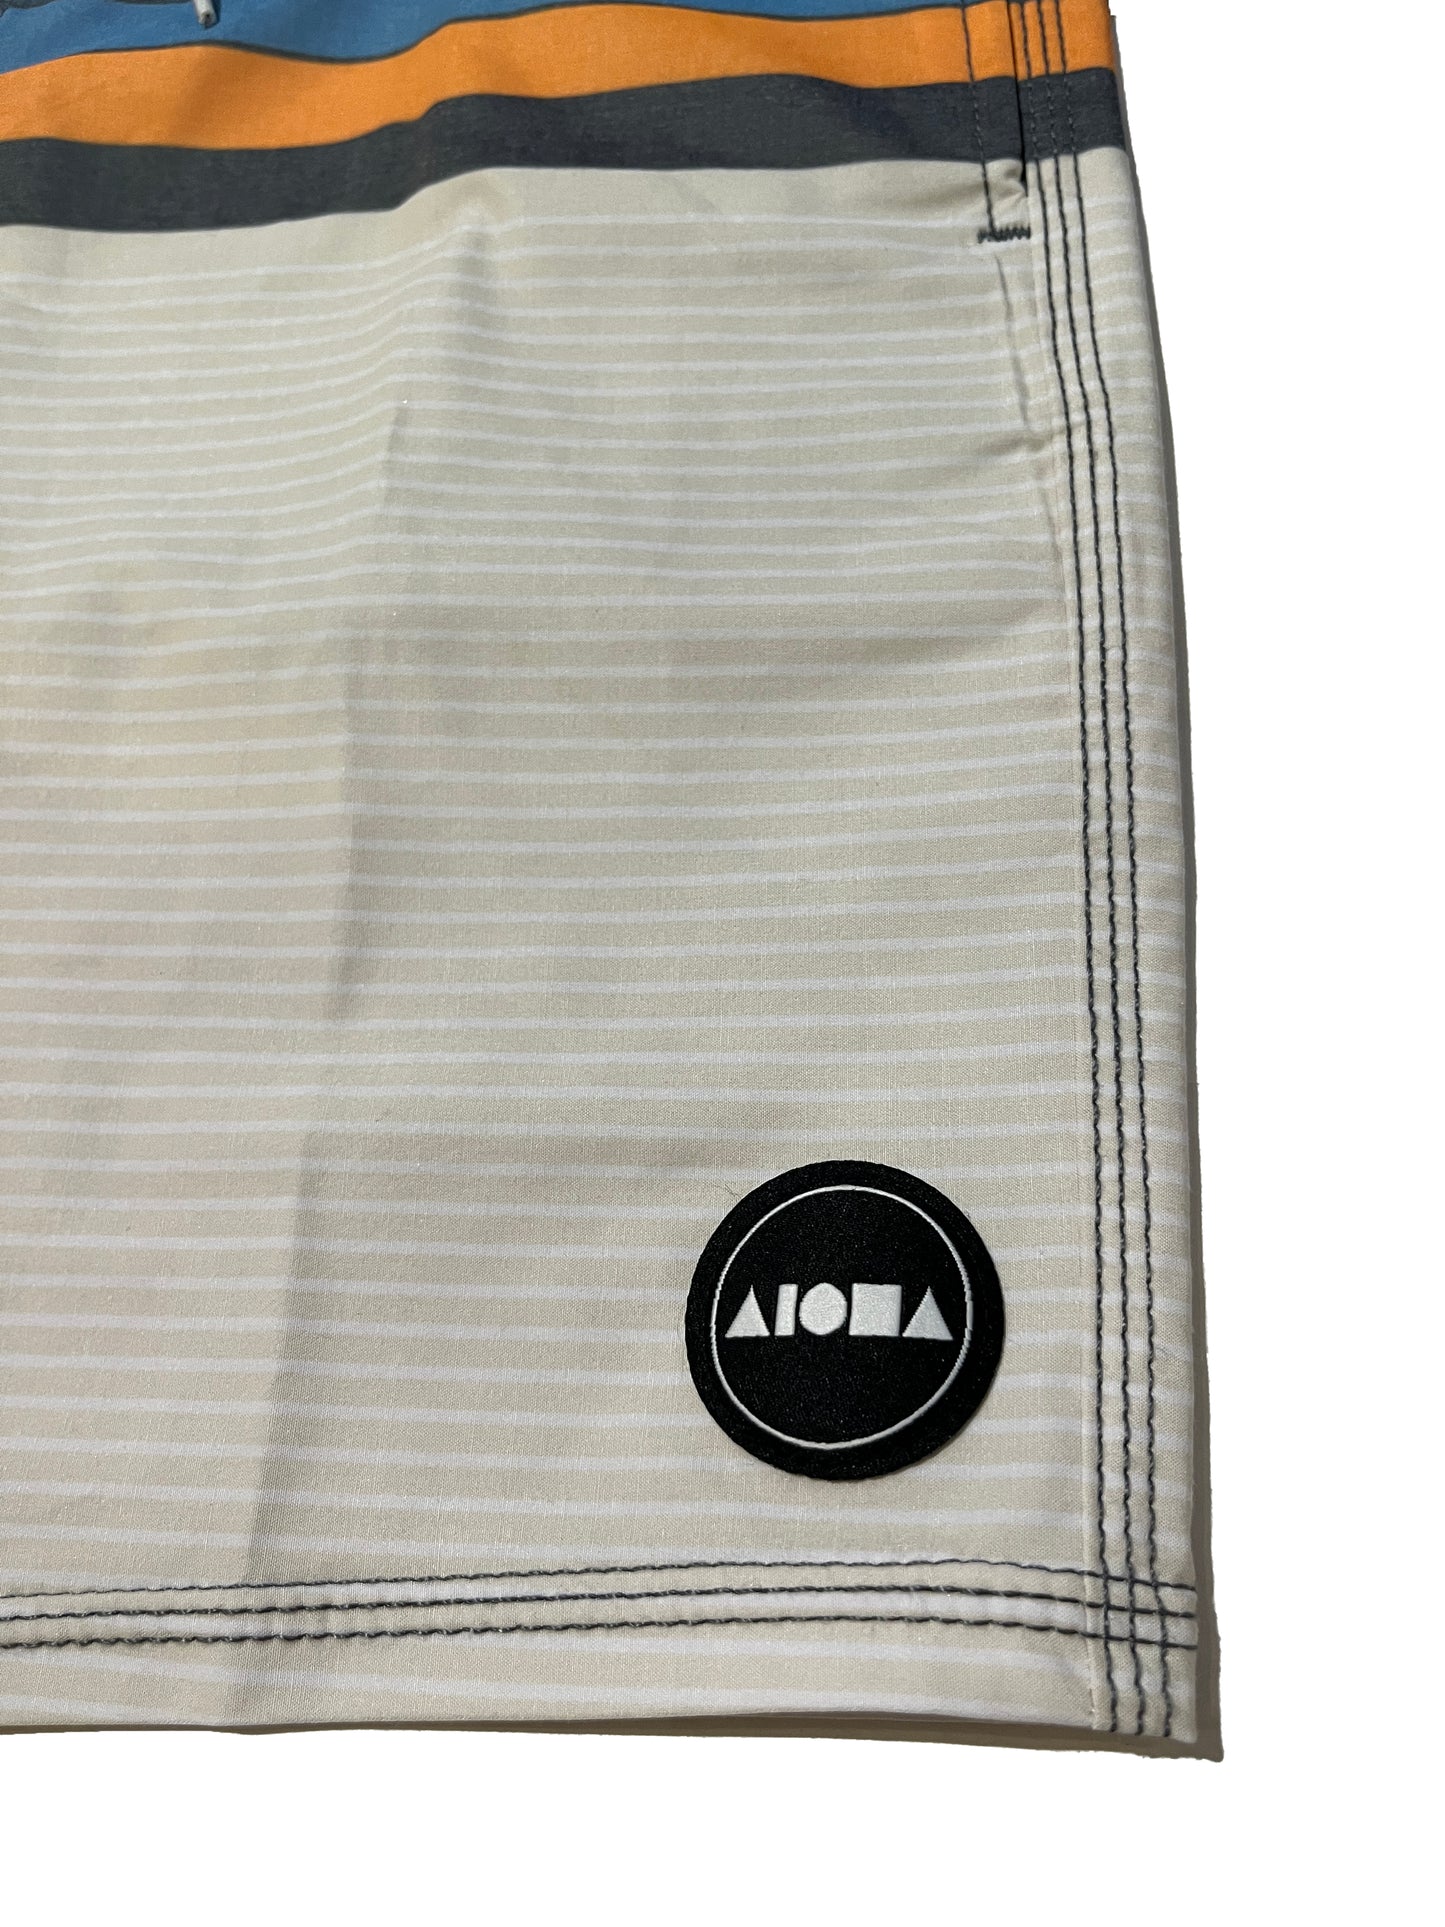 Closeup detail of Aloha Surf Shapes boardshorts woven logo on left leg